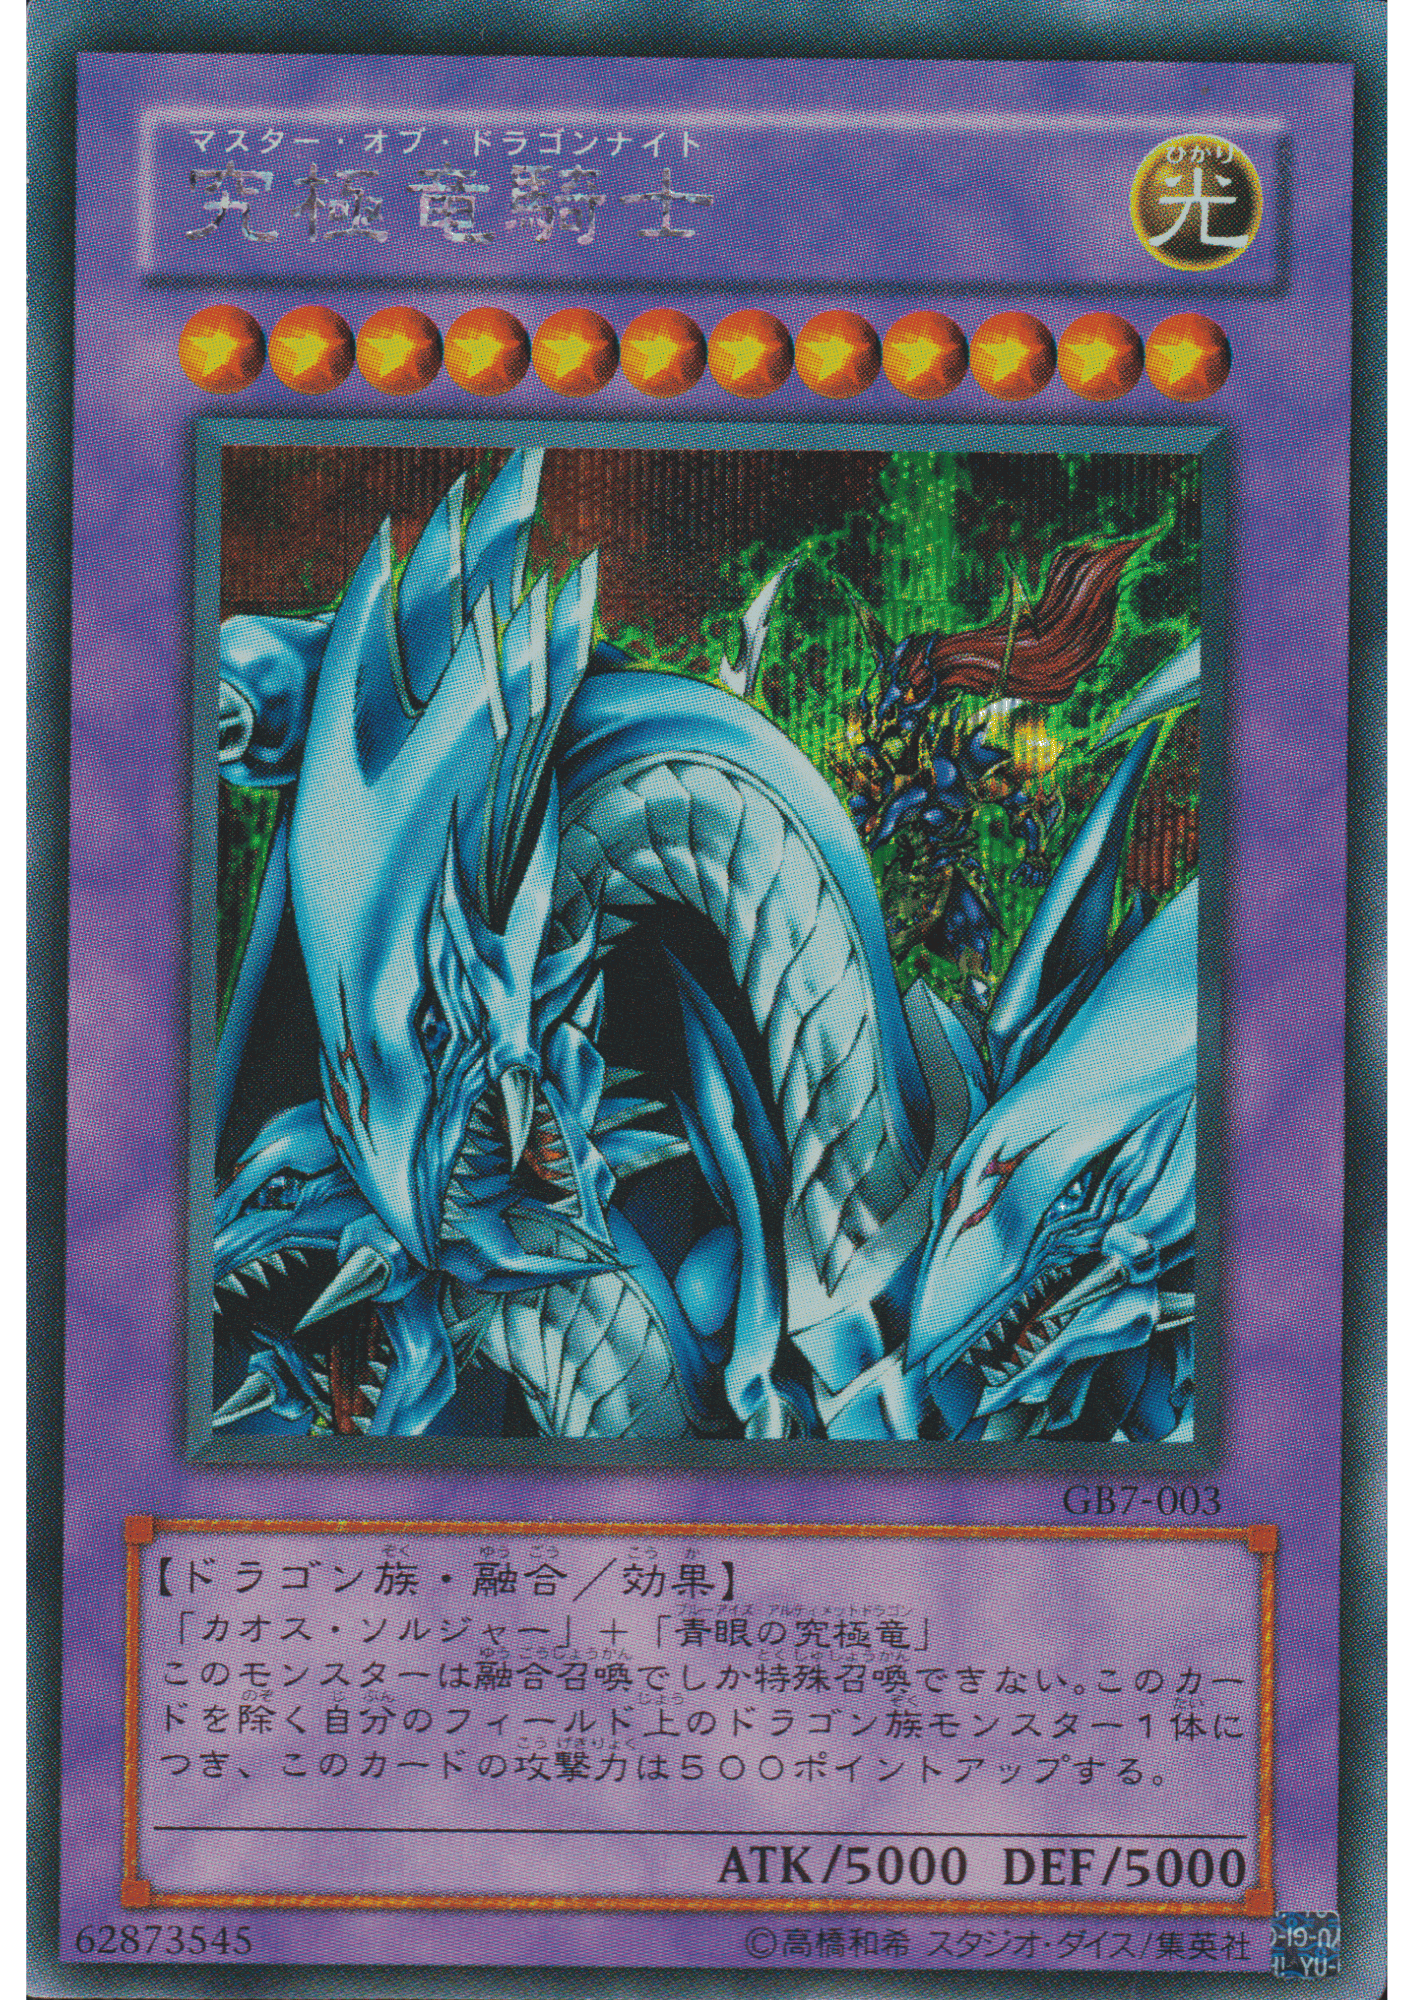 Dragon Master Knight GB7-003 |  GB7 ChitoroShop